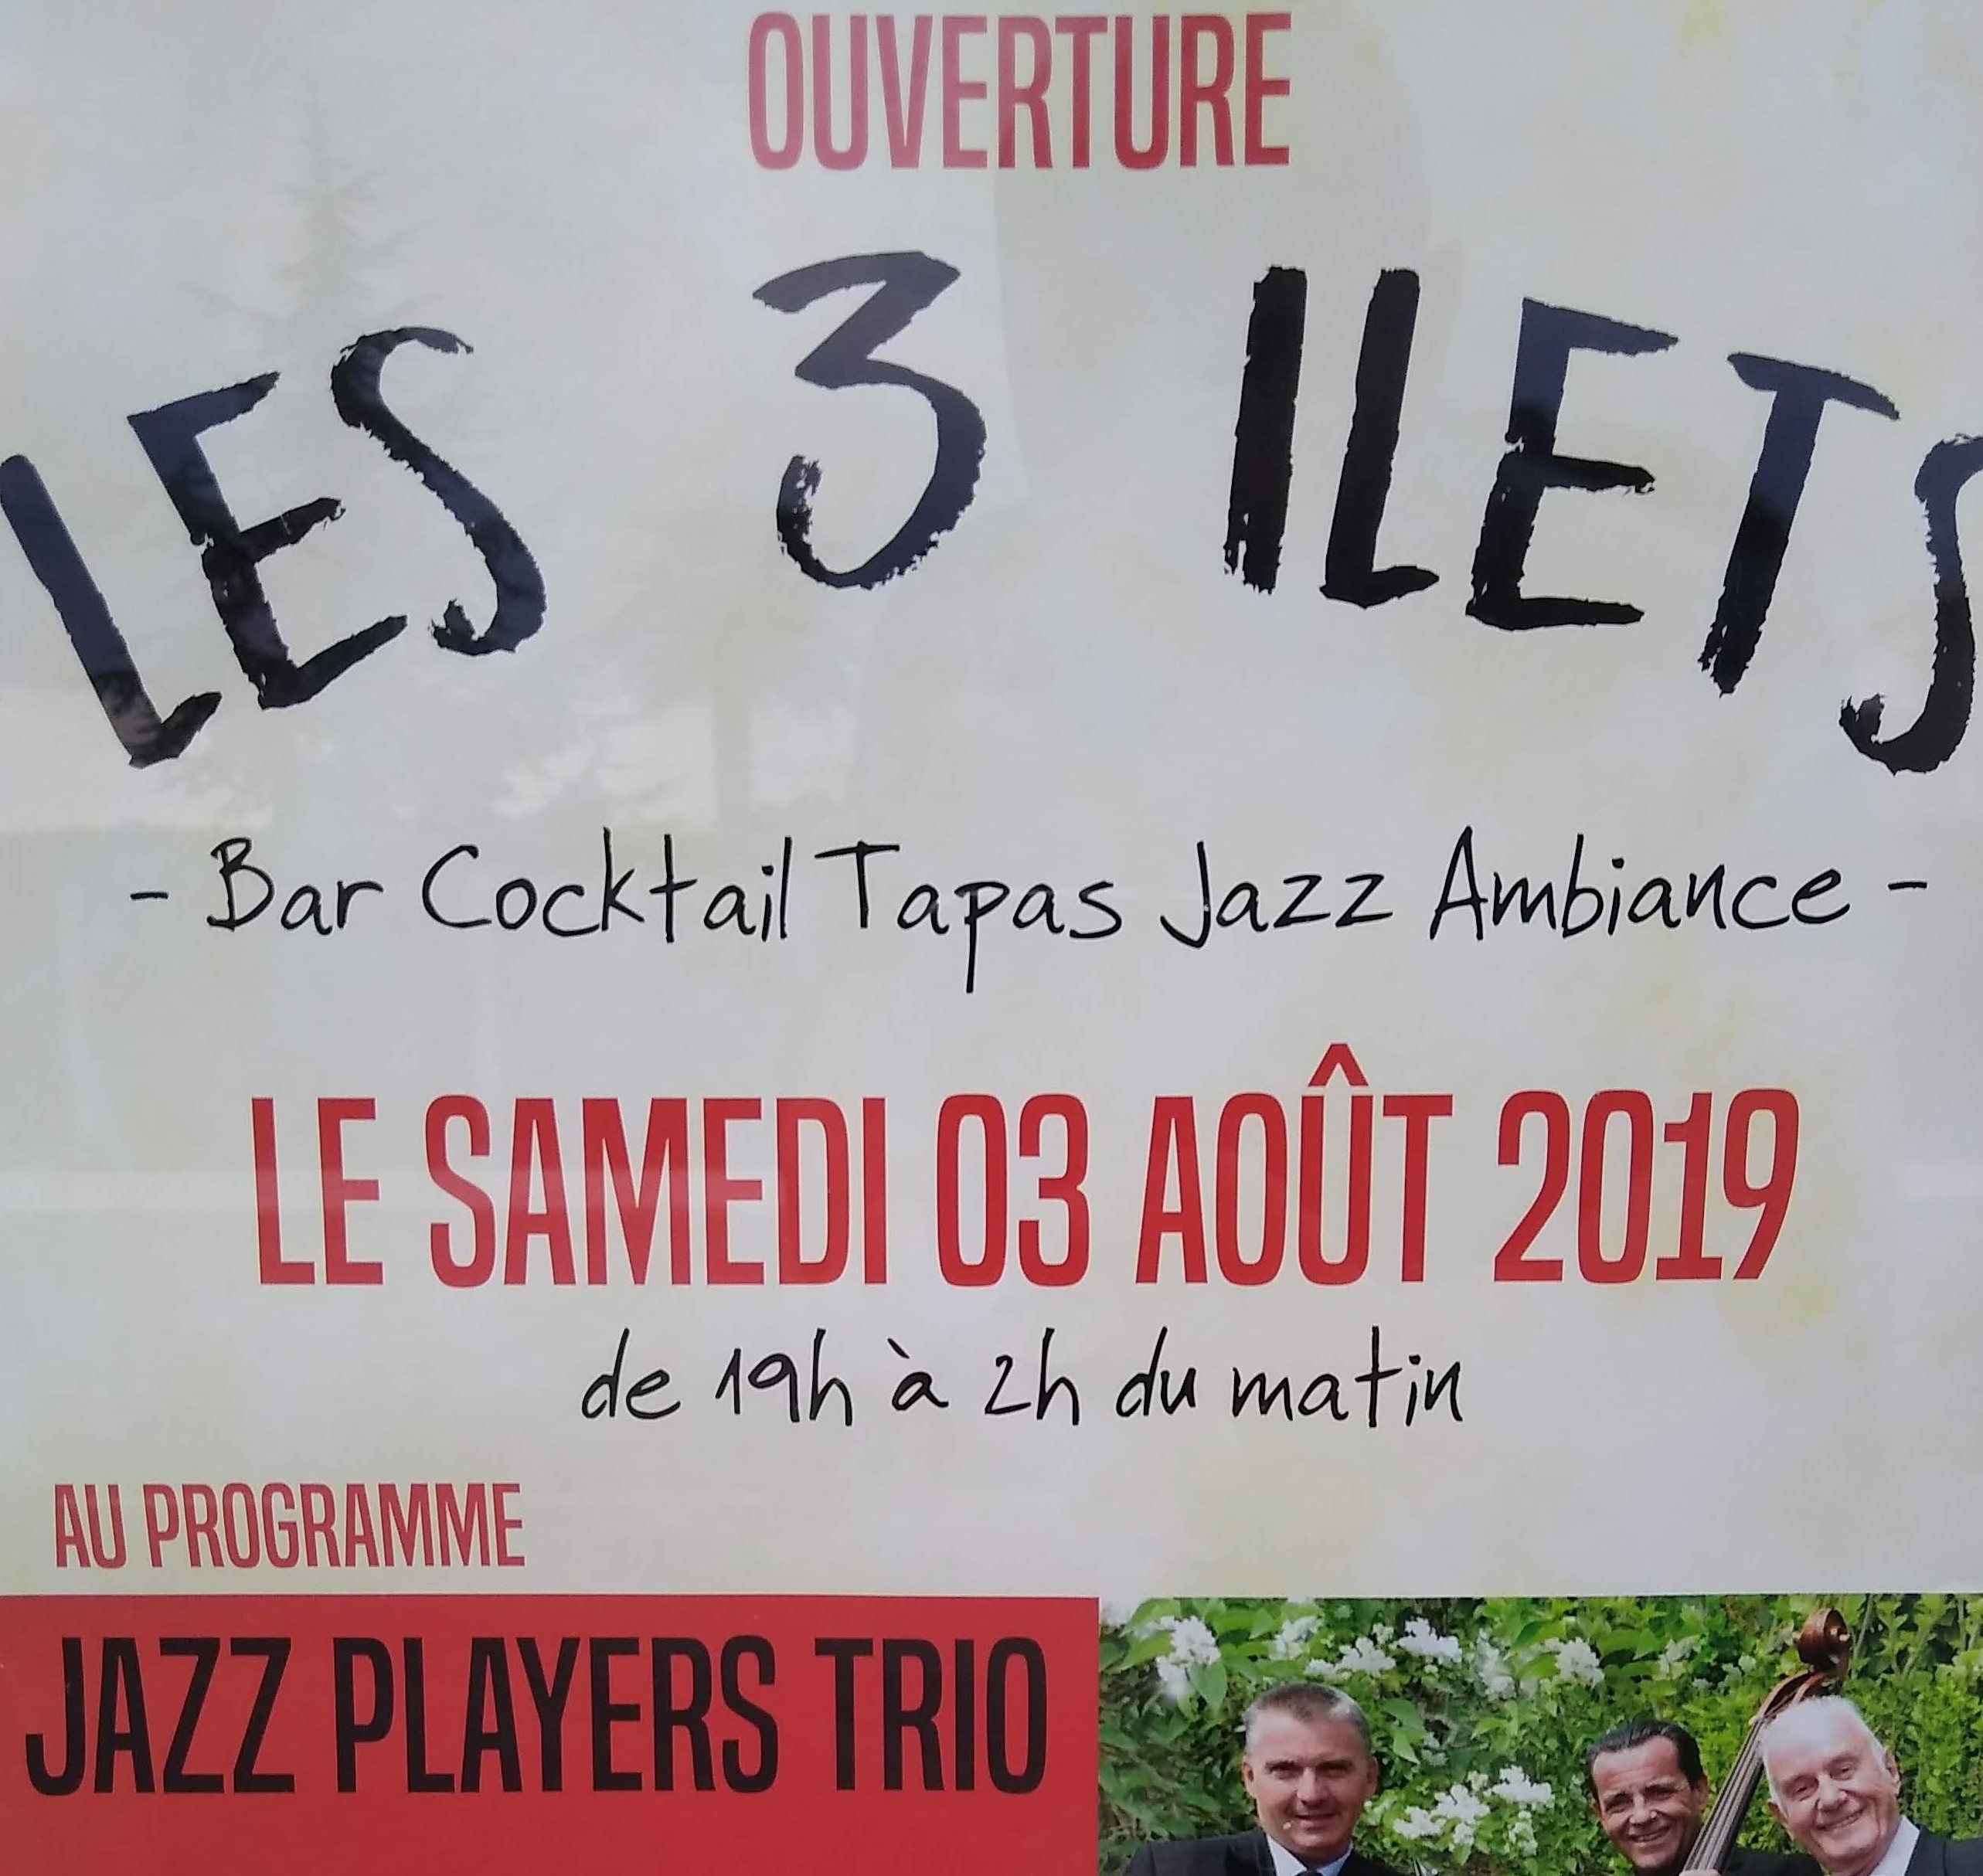 Ouverture des 3 Ilets, bar Cocktail Tapas Jazz à Saint Sulpice de Faleyrens